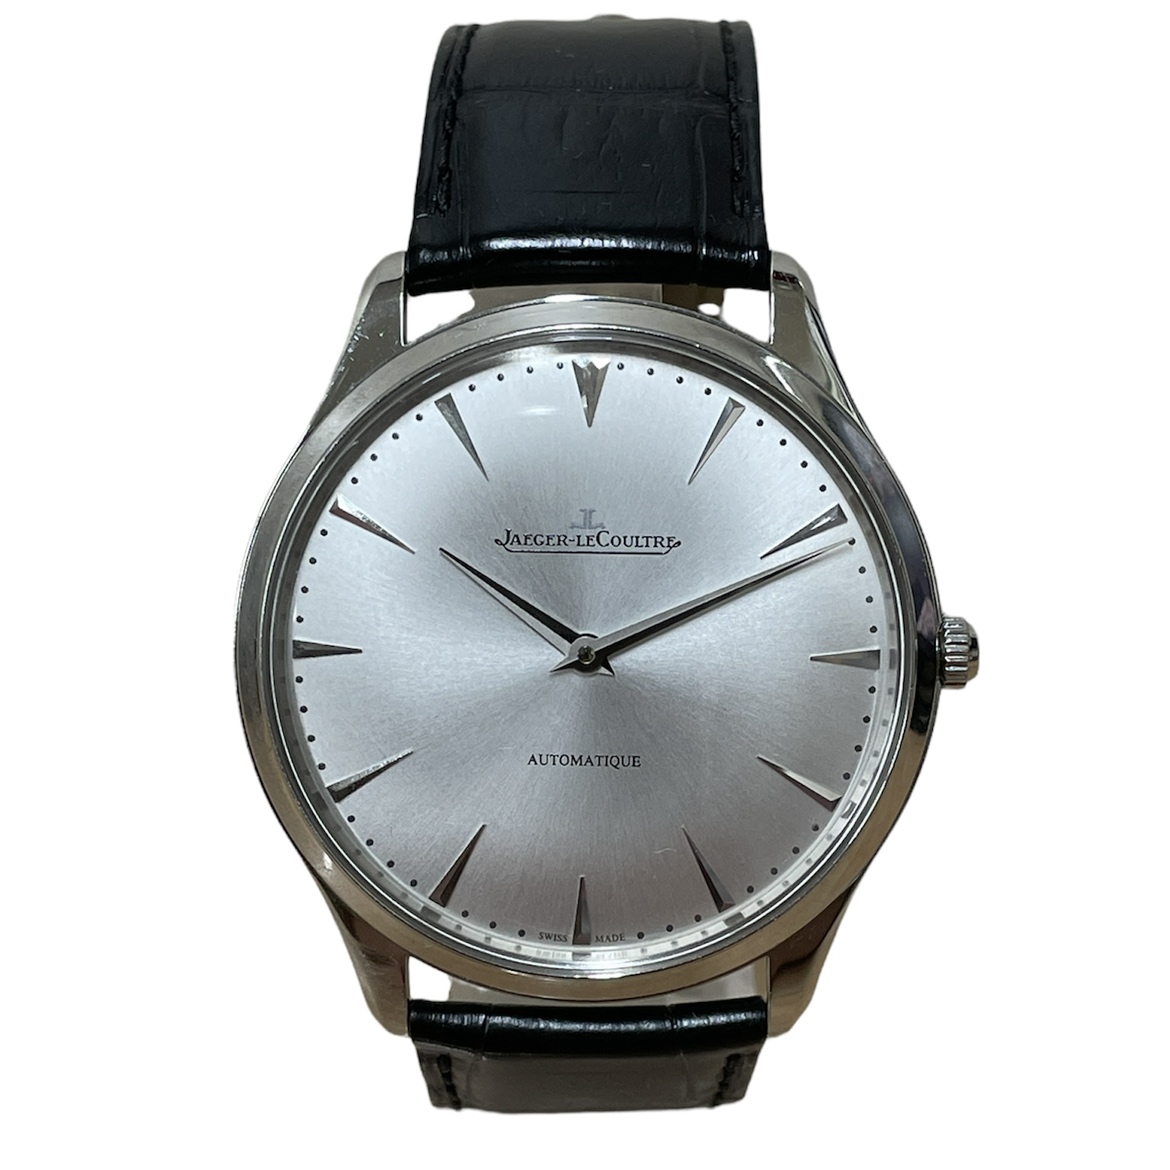 ジャガールクルトのQ1338421 マスター ウルトラスリム41 SS 自動巻き 腕時計の買取実績です。